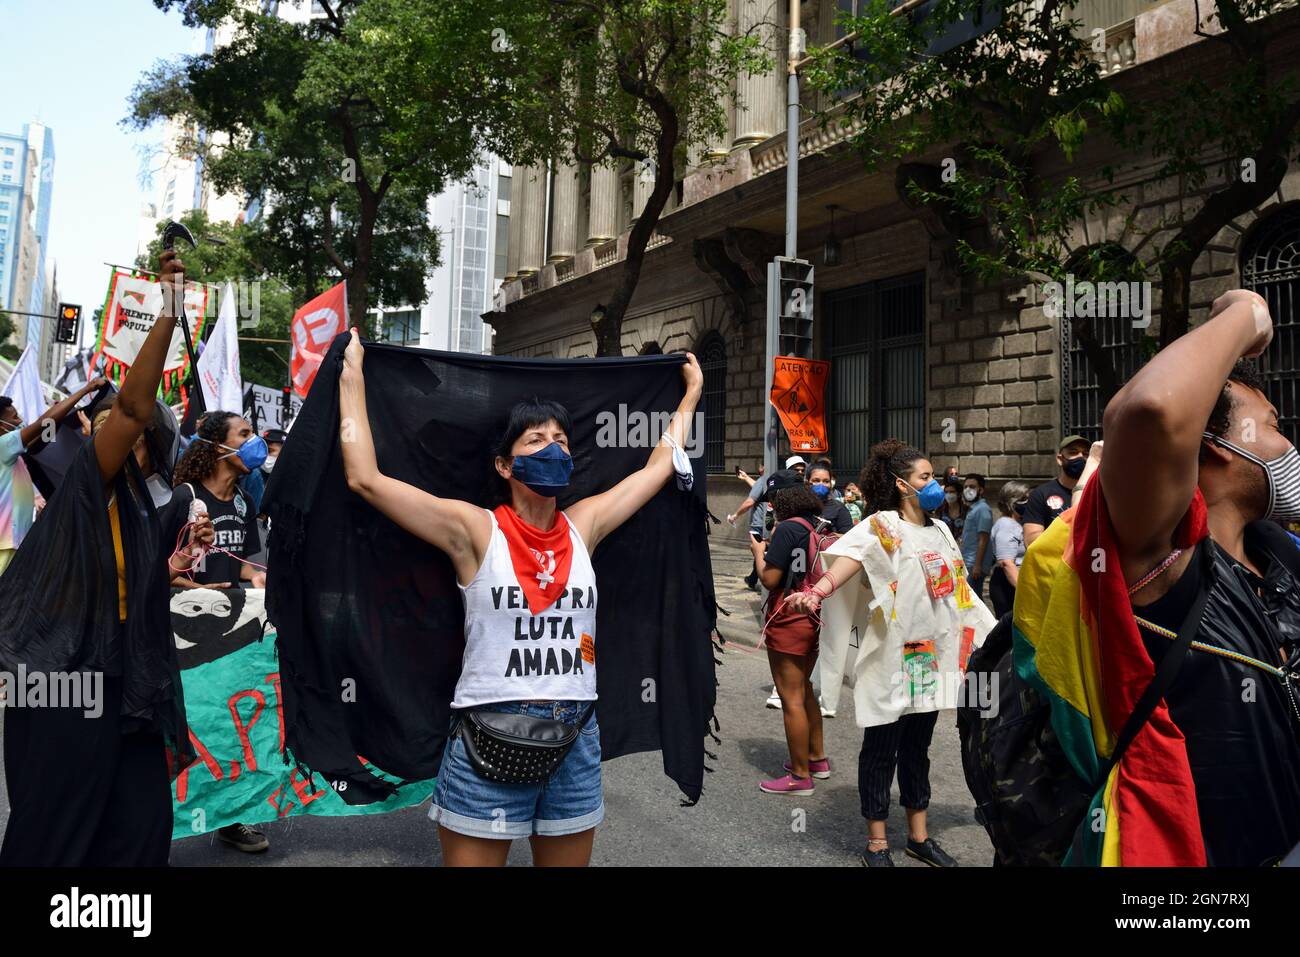 Brasile – 7 settembre 2021: I marchers si sono riuniti a Rio de Janeiro con segnali e bandiere per protestare contro il presidente brasiliano di estrema destra Jair Bolsonaro. Foto Stock